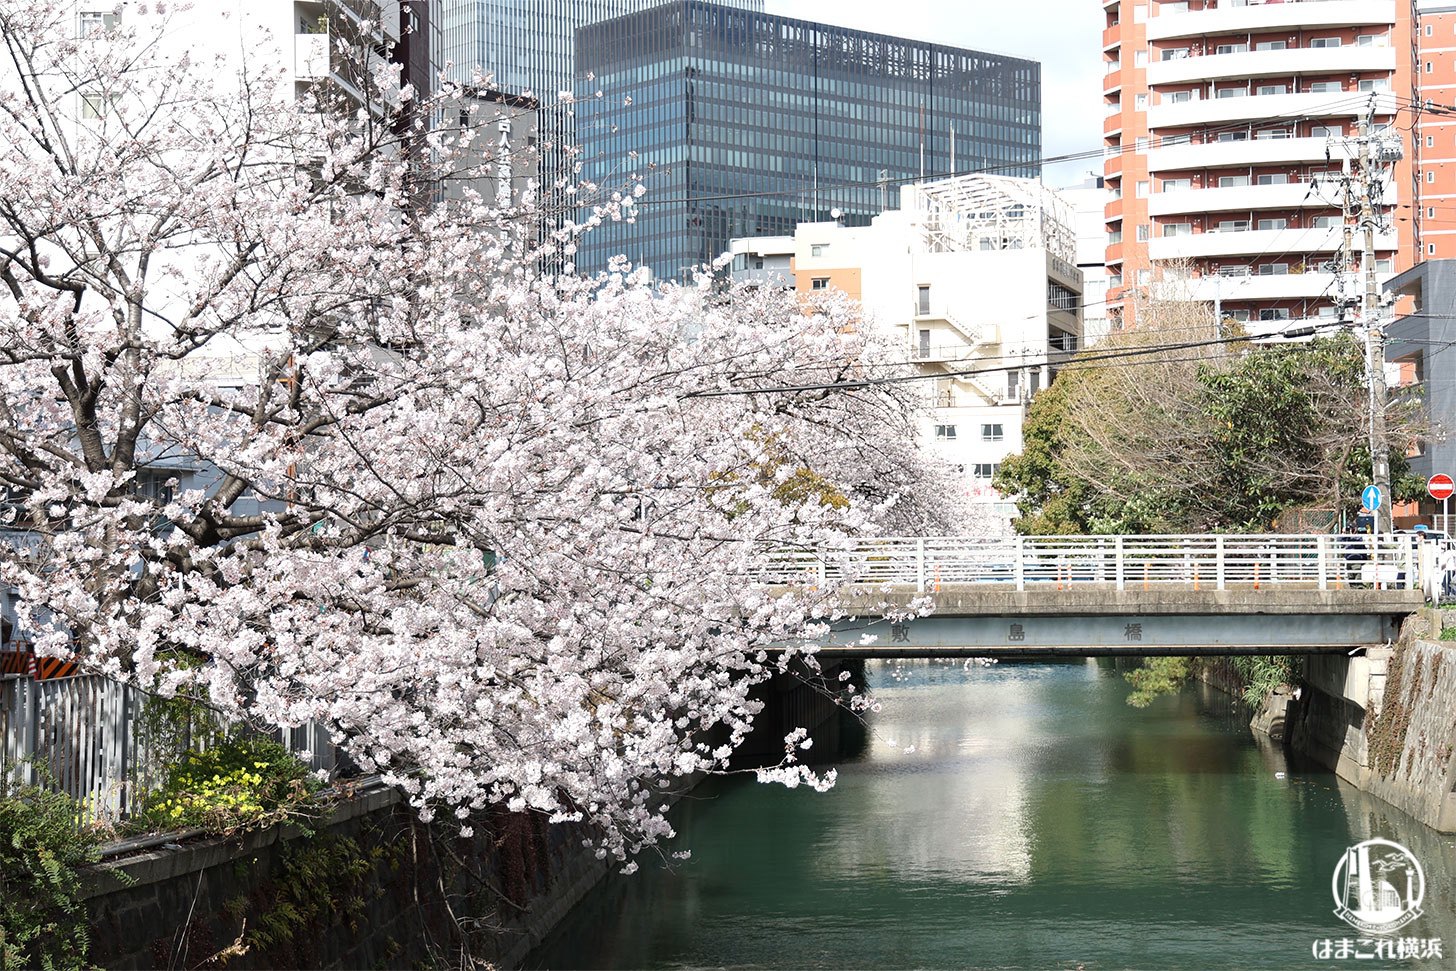 石崎川プロムナード 橋の上から見た桜